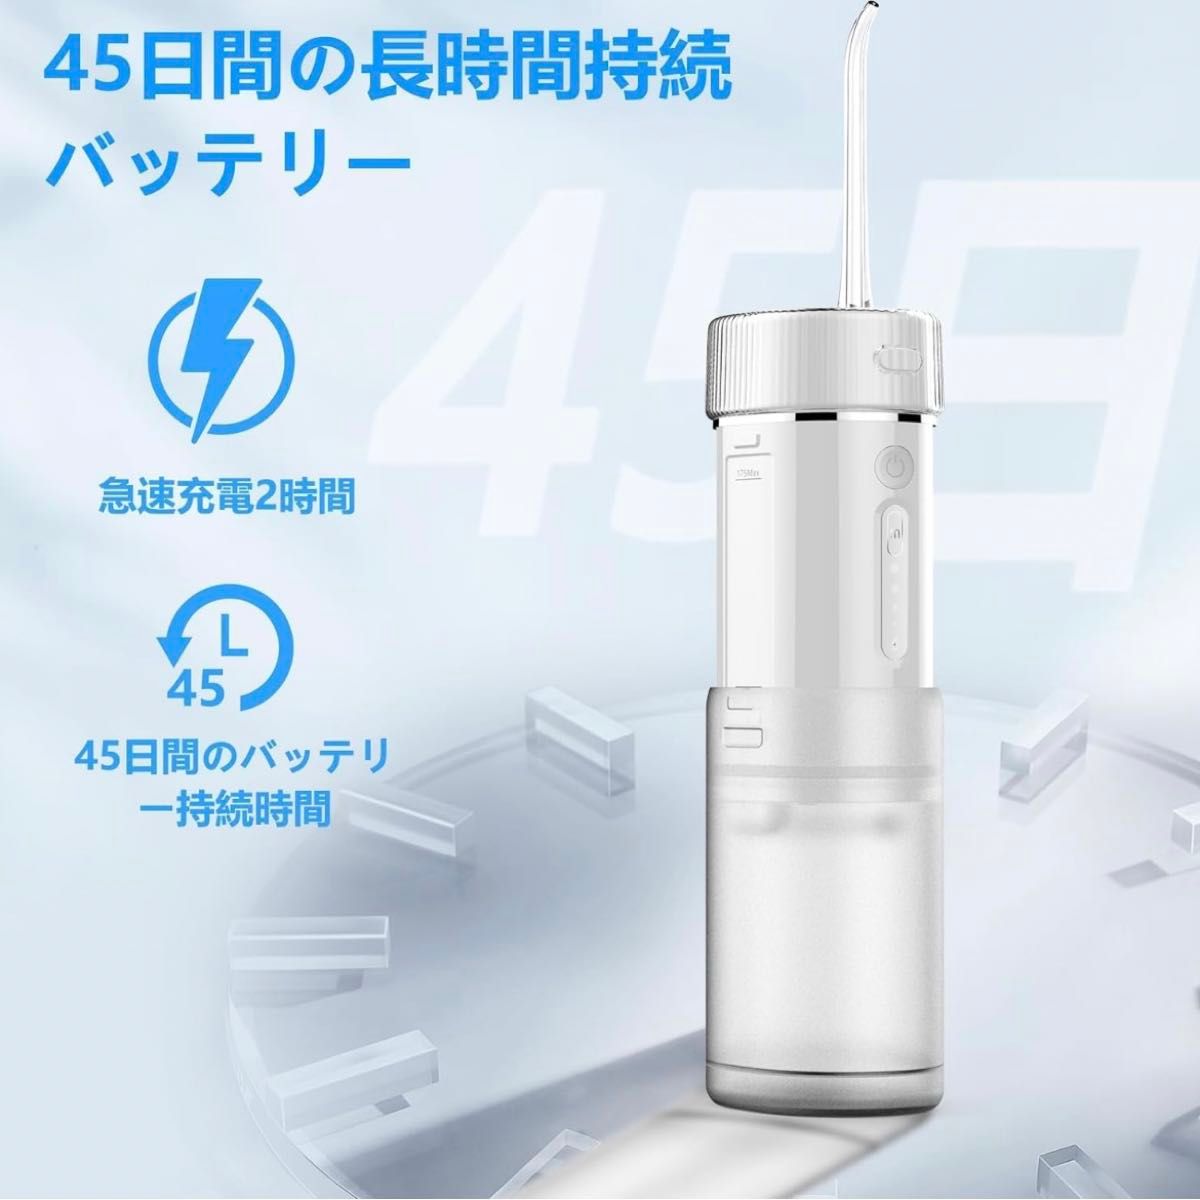 口腔洗浄機 ジェットウォッシャー ウォーターピック コードレス IPX7防水 USB充電 Type-C 360度回転ノズル 